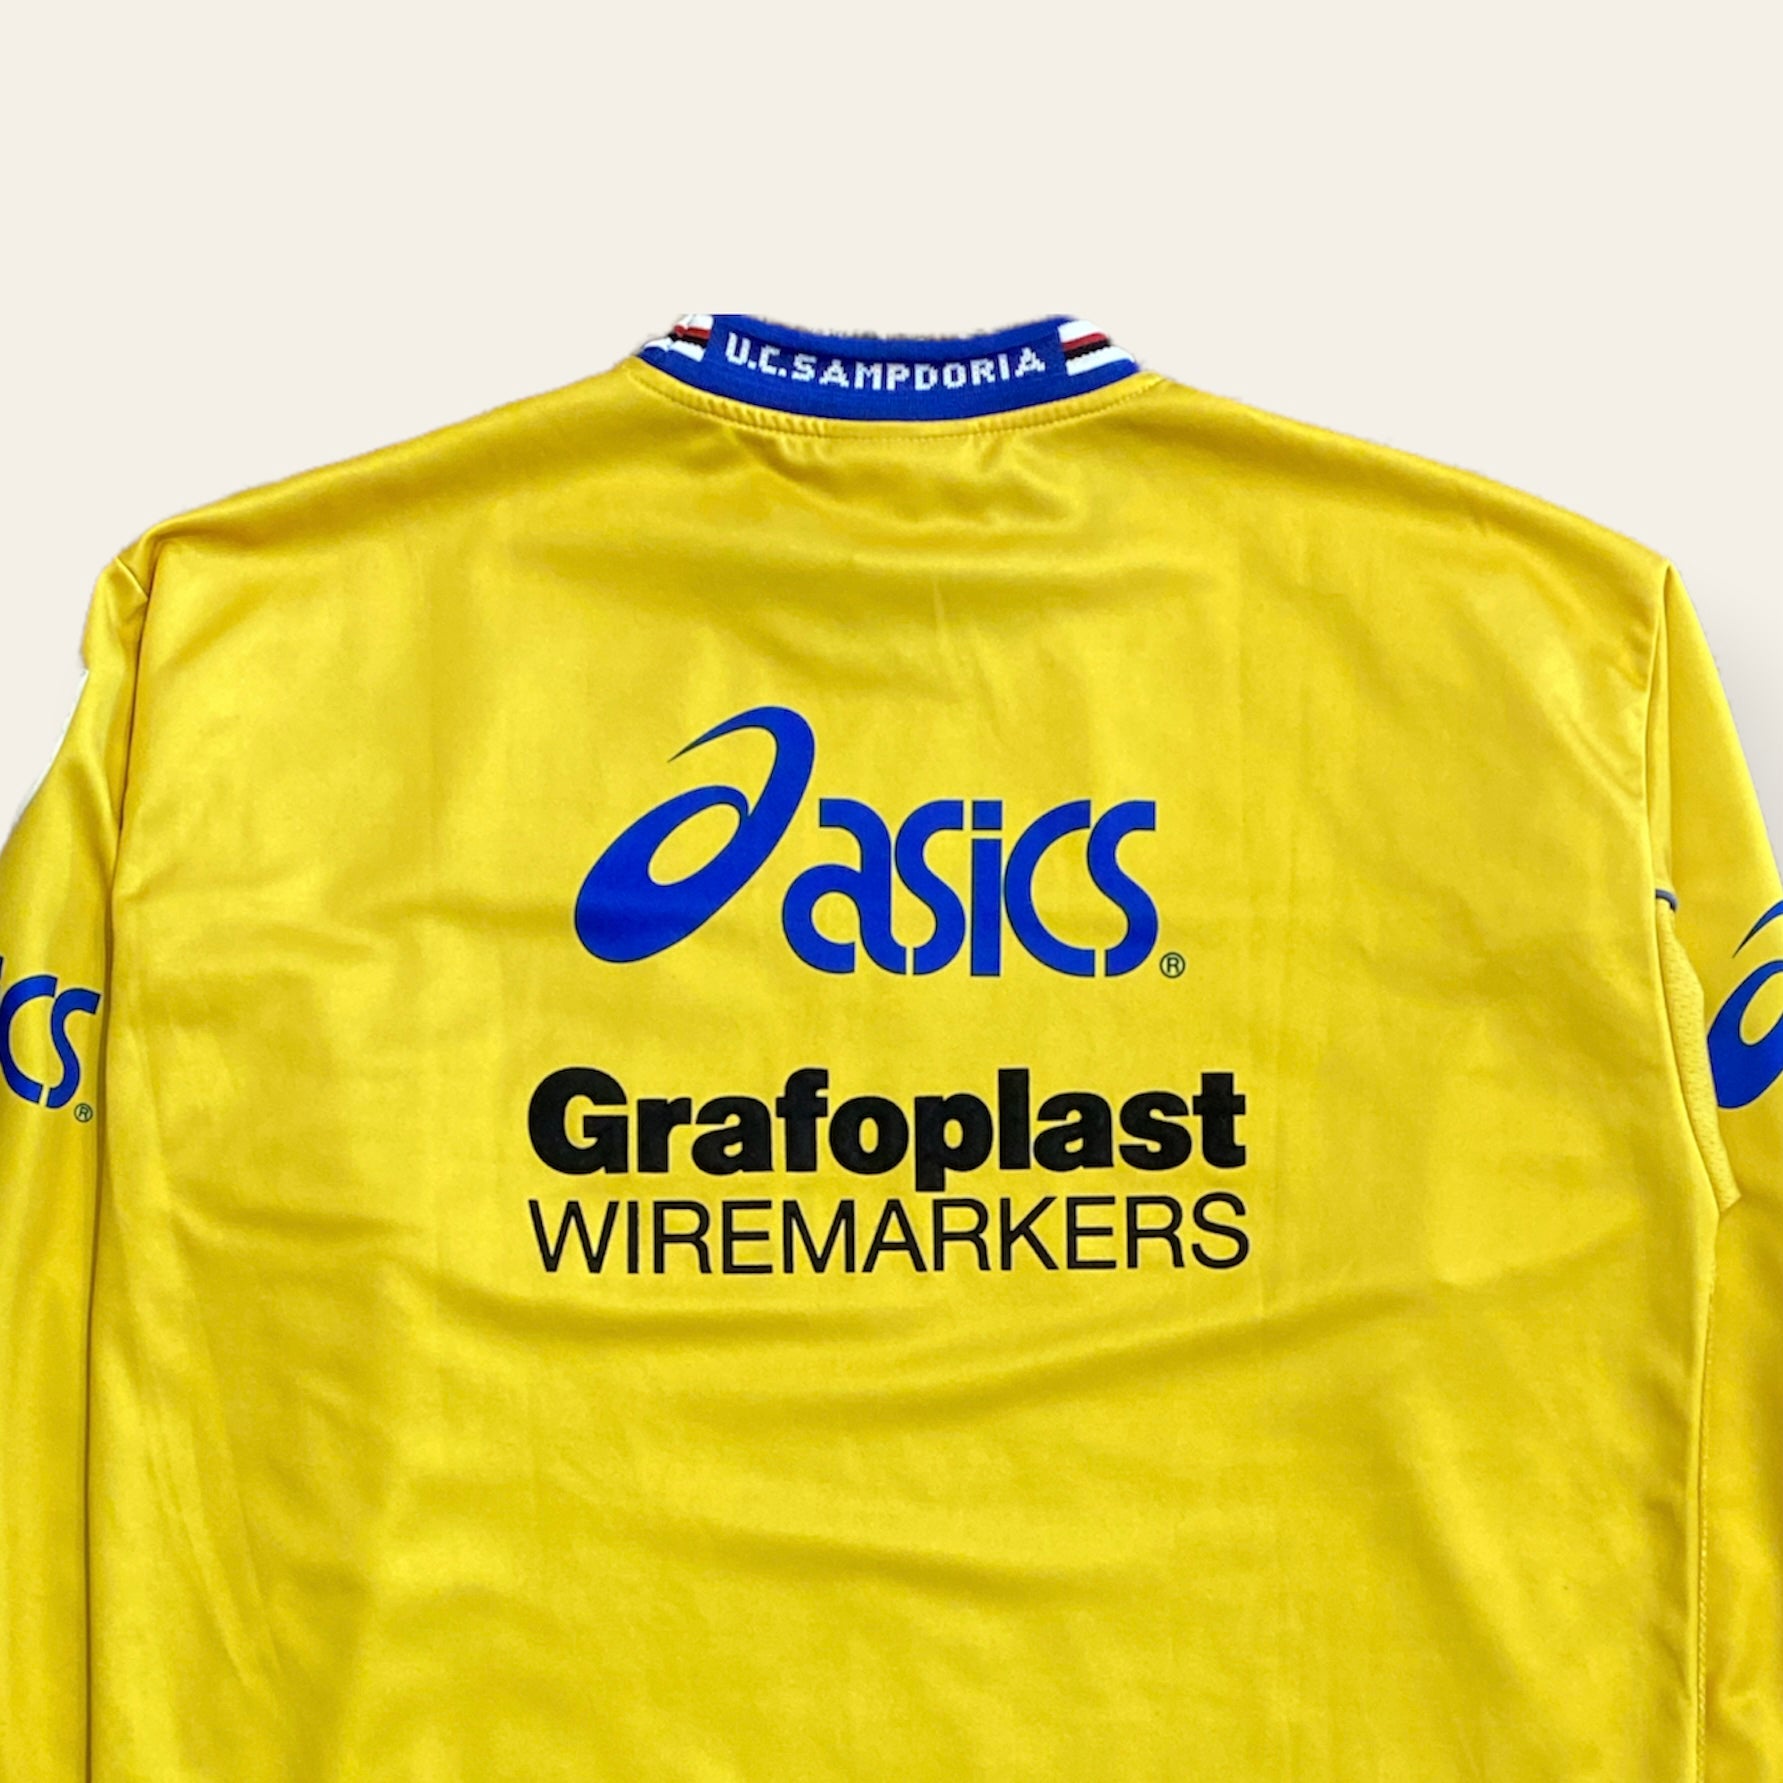 99/00 U.C. Sampdoria Goalie Kit Size XL